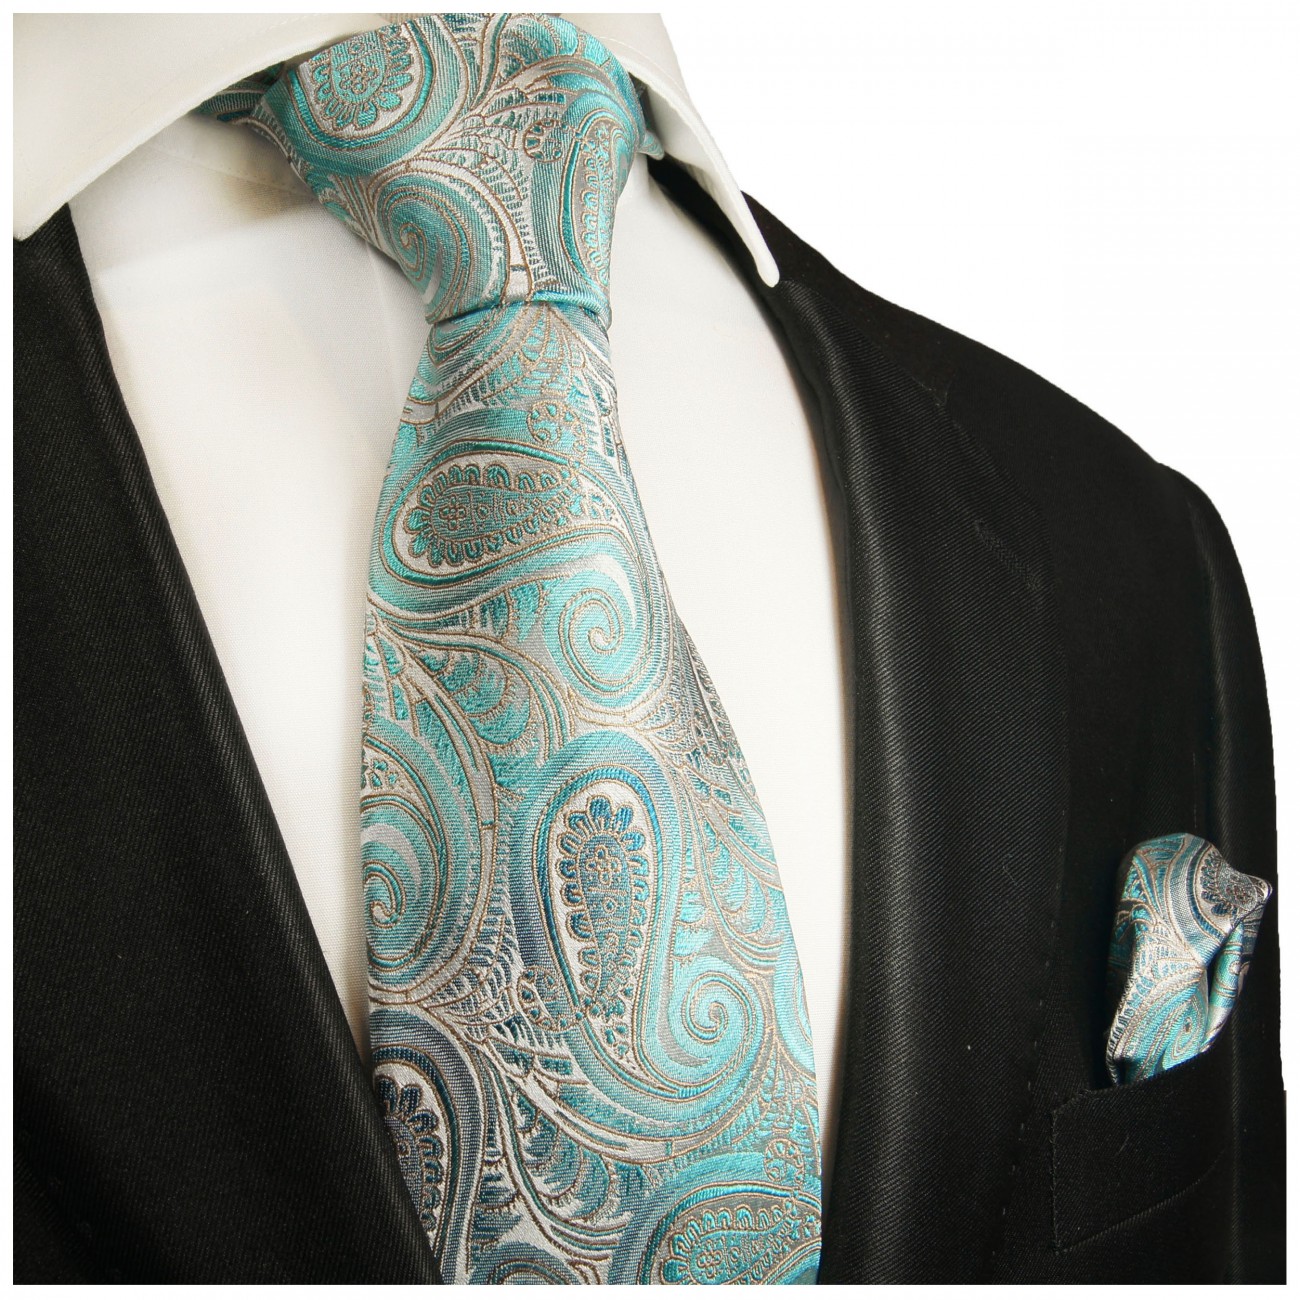 Krawatte türkis mit Einstecktuch grau paisley 2016